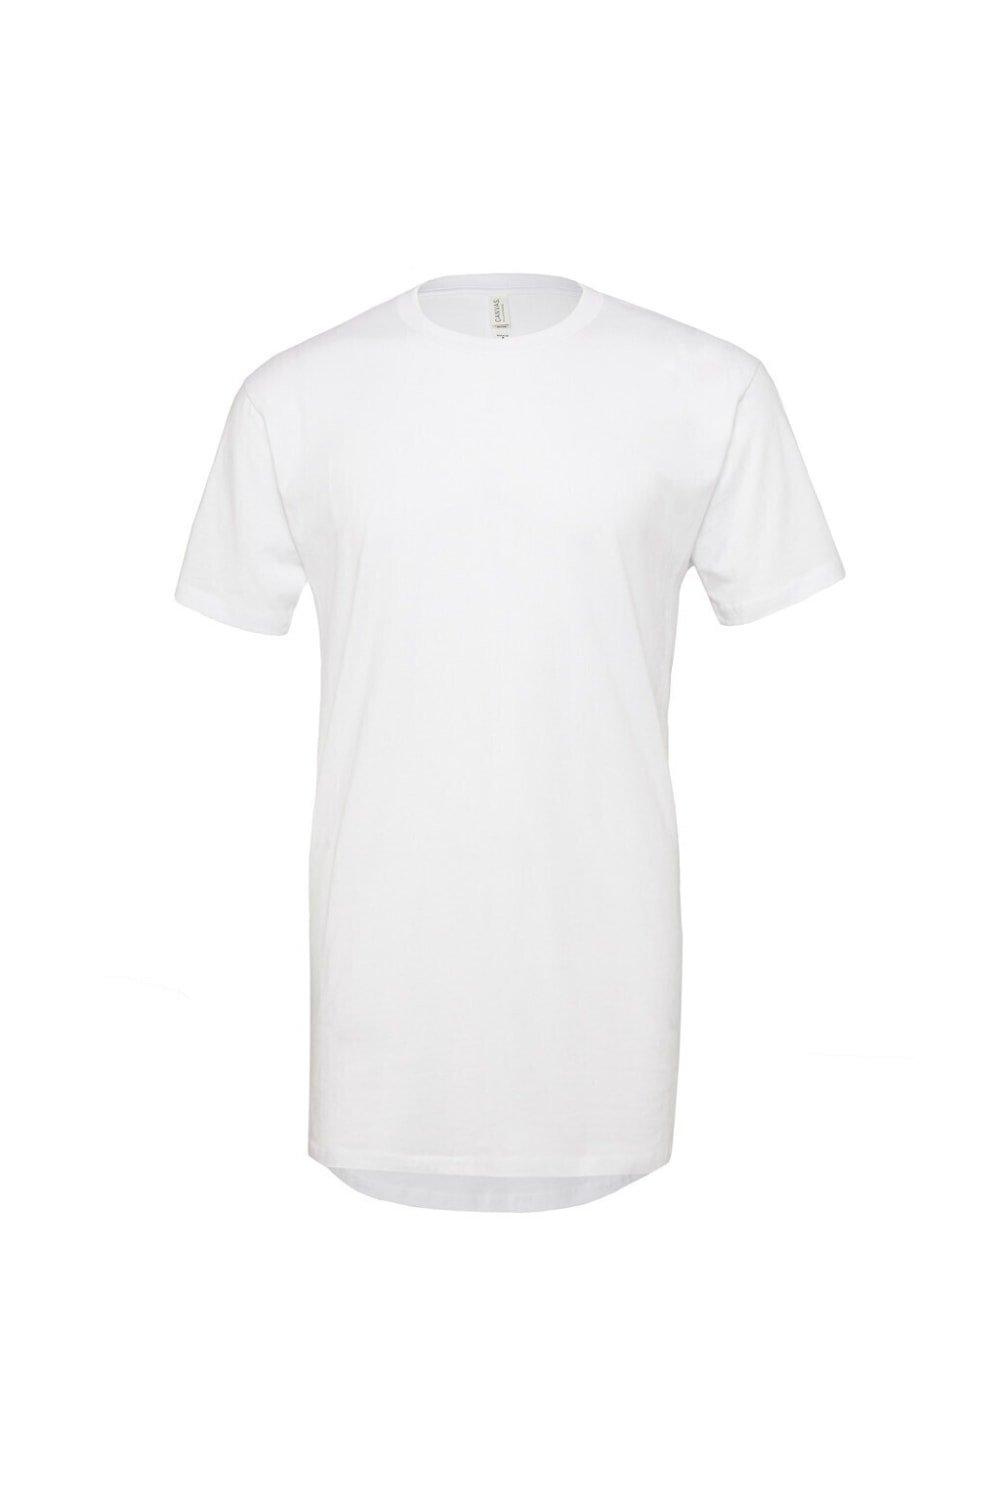 Длинная городская футболка Bella + Canvas, белый мужская летняя футболка темно фиолетового цвета размеры s 2xl